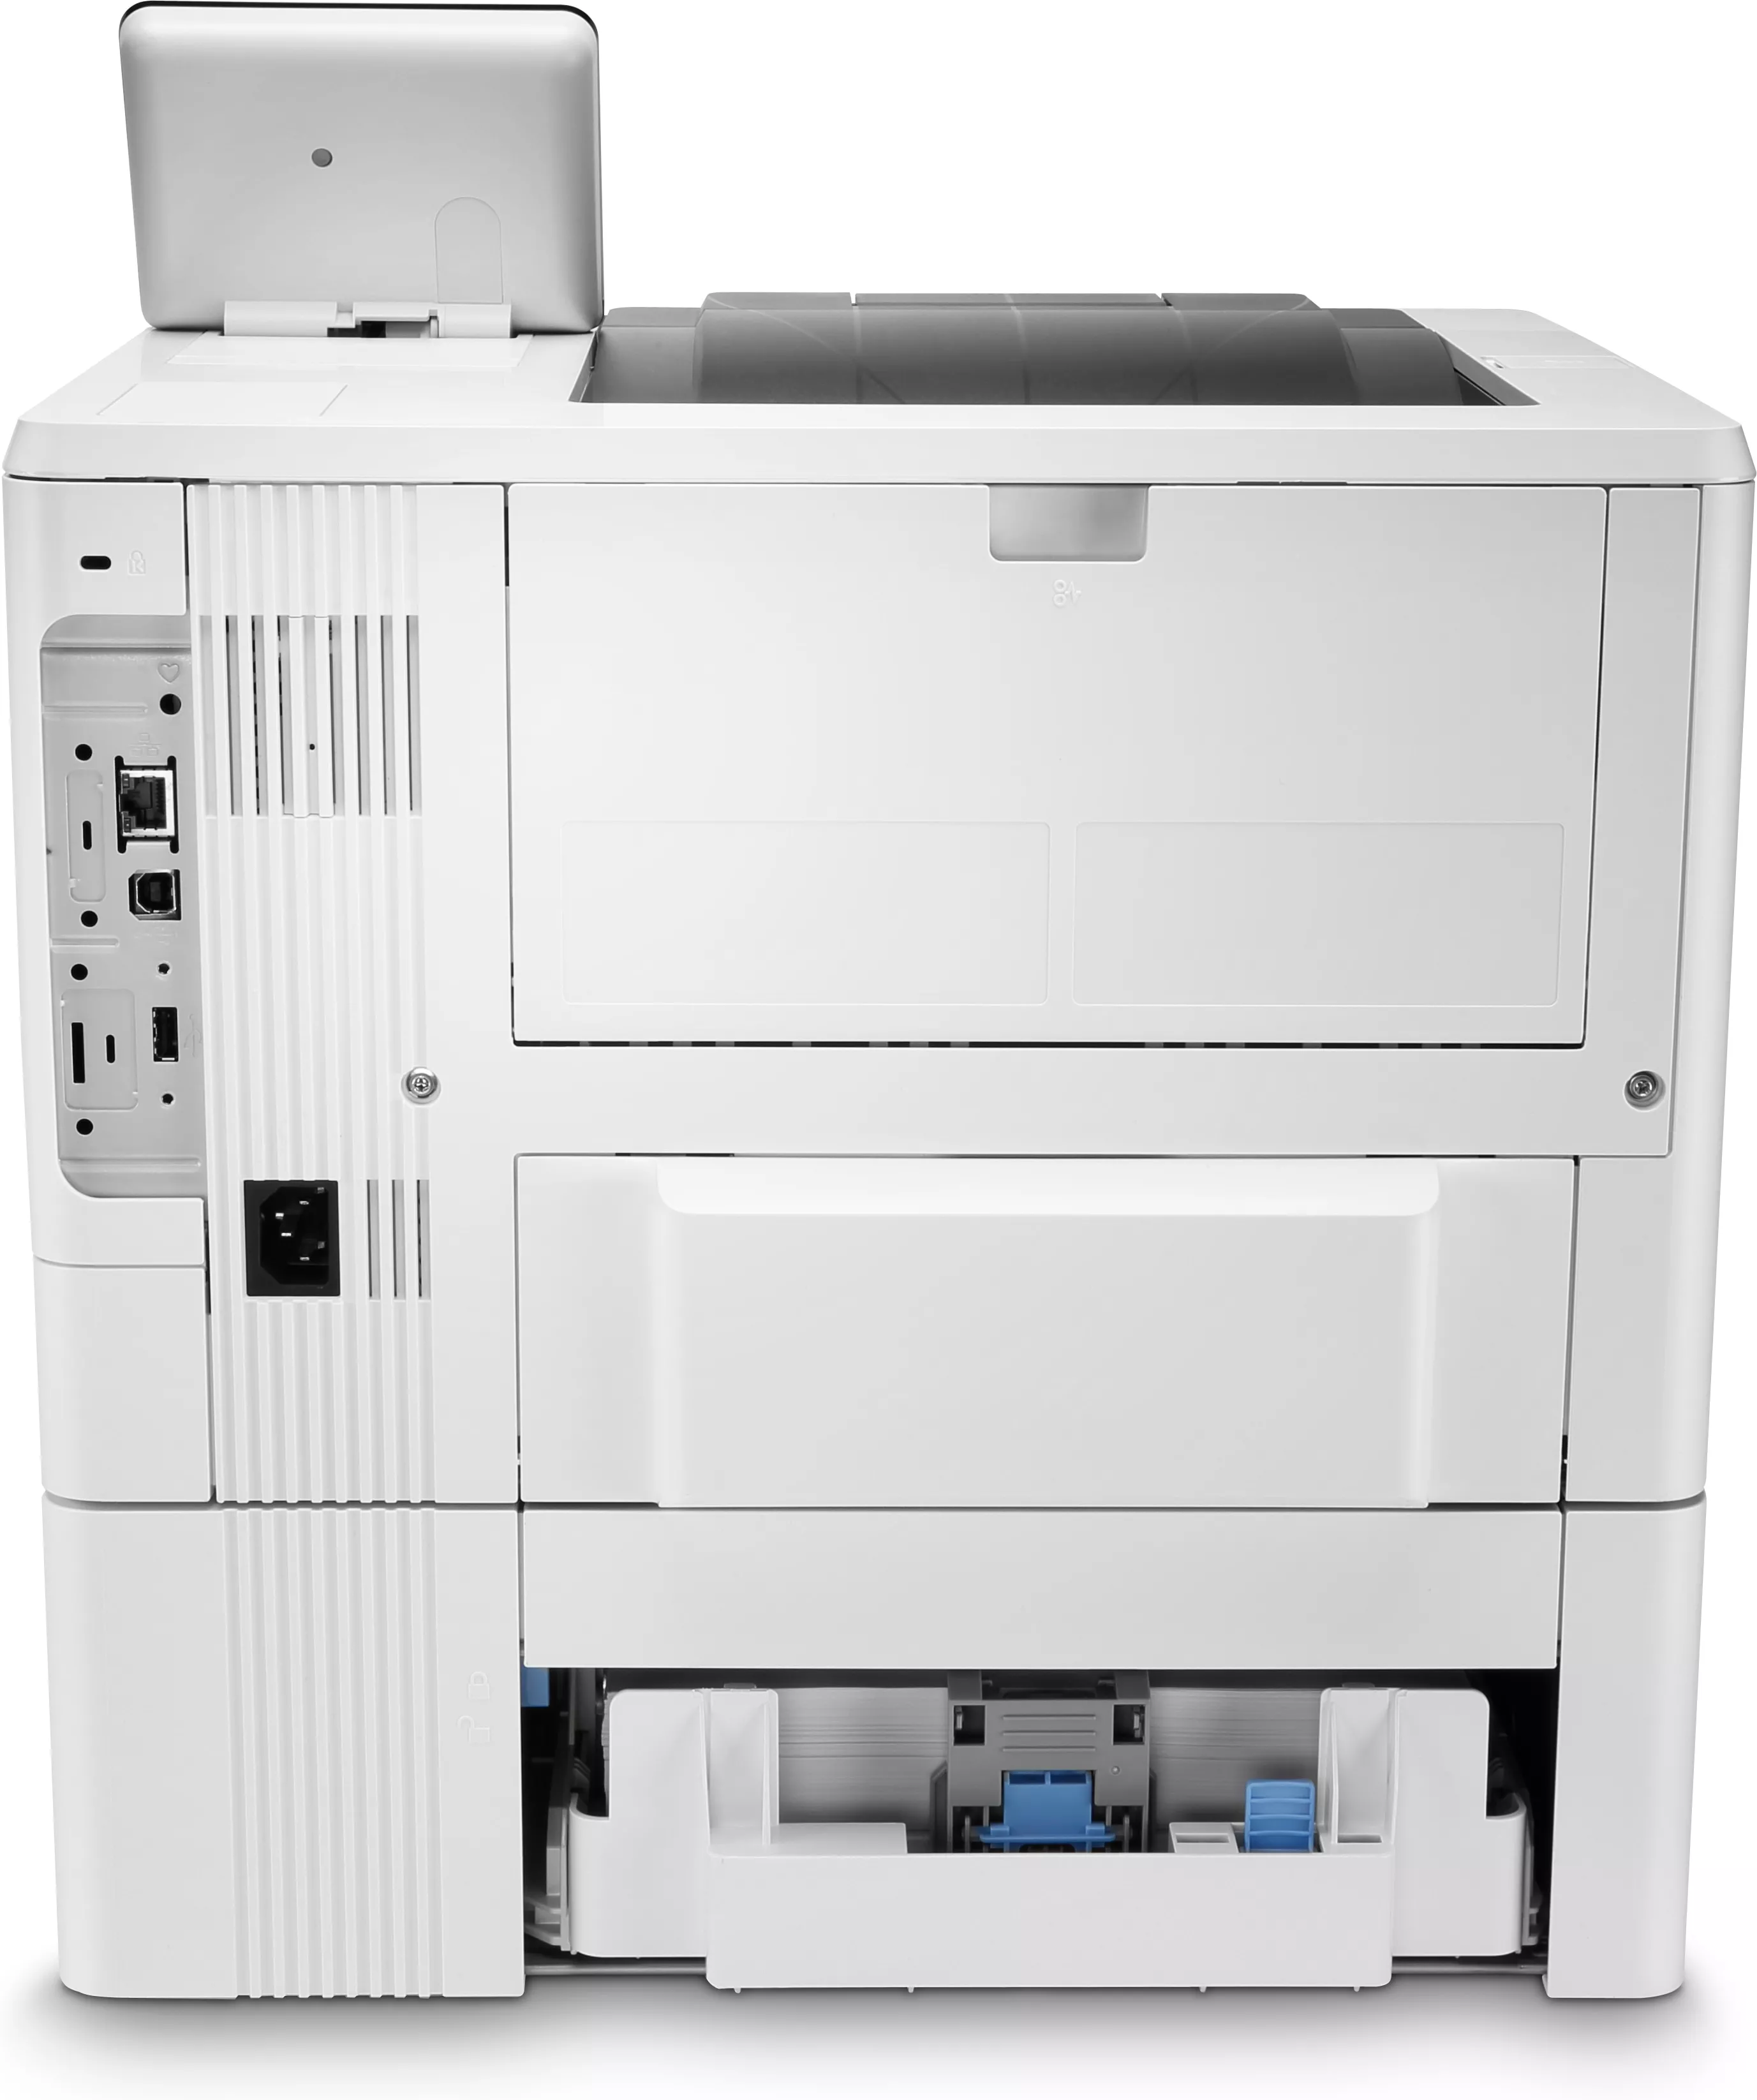 Vente HP LaserJet Enterprise M507x HP au meilleur prix - visuel 4